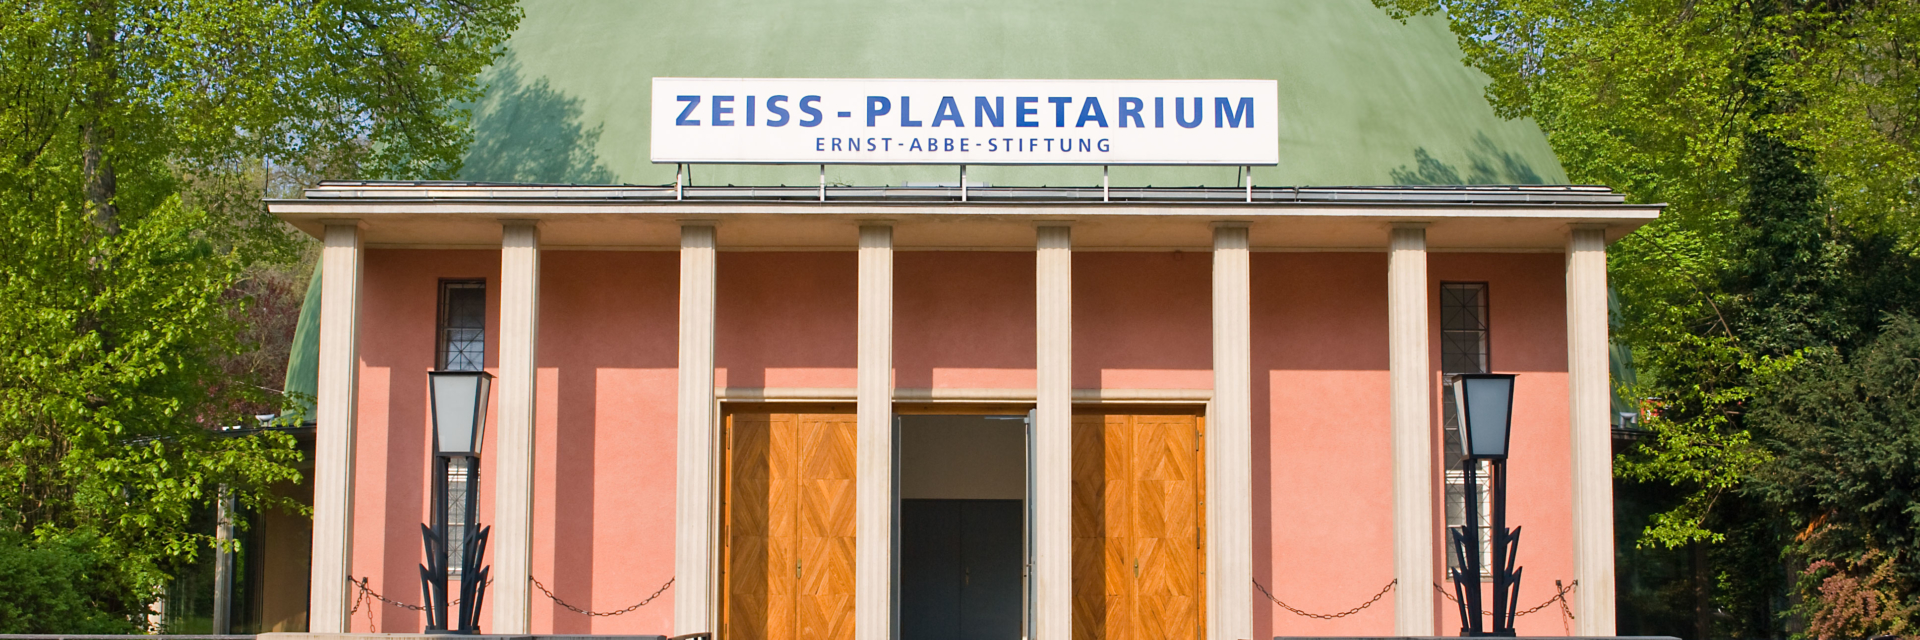 Außenansicht des Zeiss-Planetarium der Tagungsstadt Jena - Jörg Hühn ist Geschäftsführer © Zeiss-Planetarium Jena / Sternevent GmbH, Foto: W. Don Eck